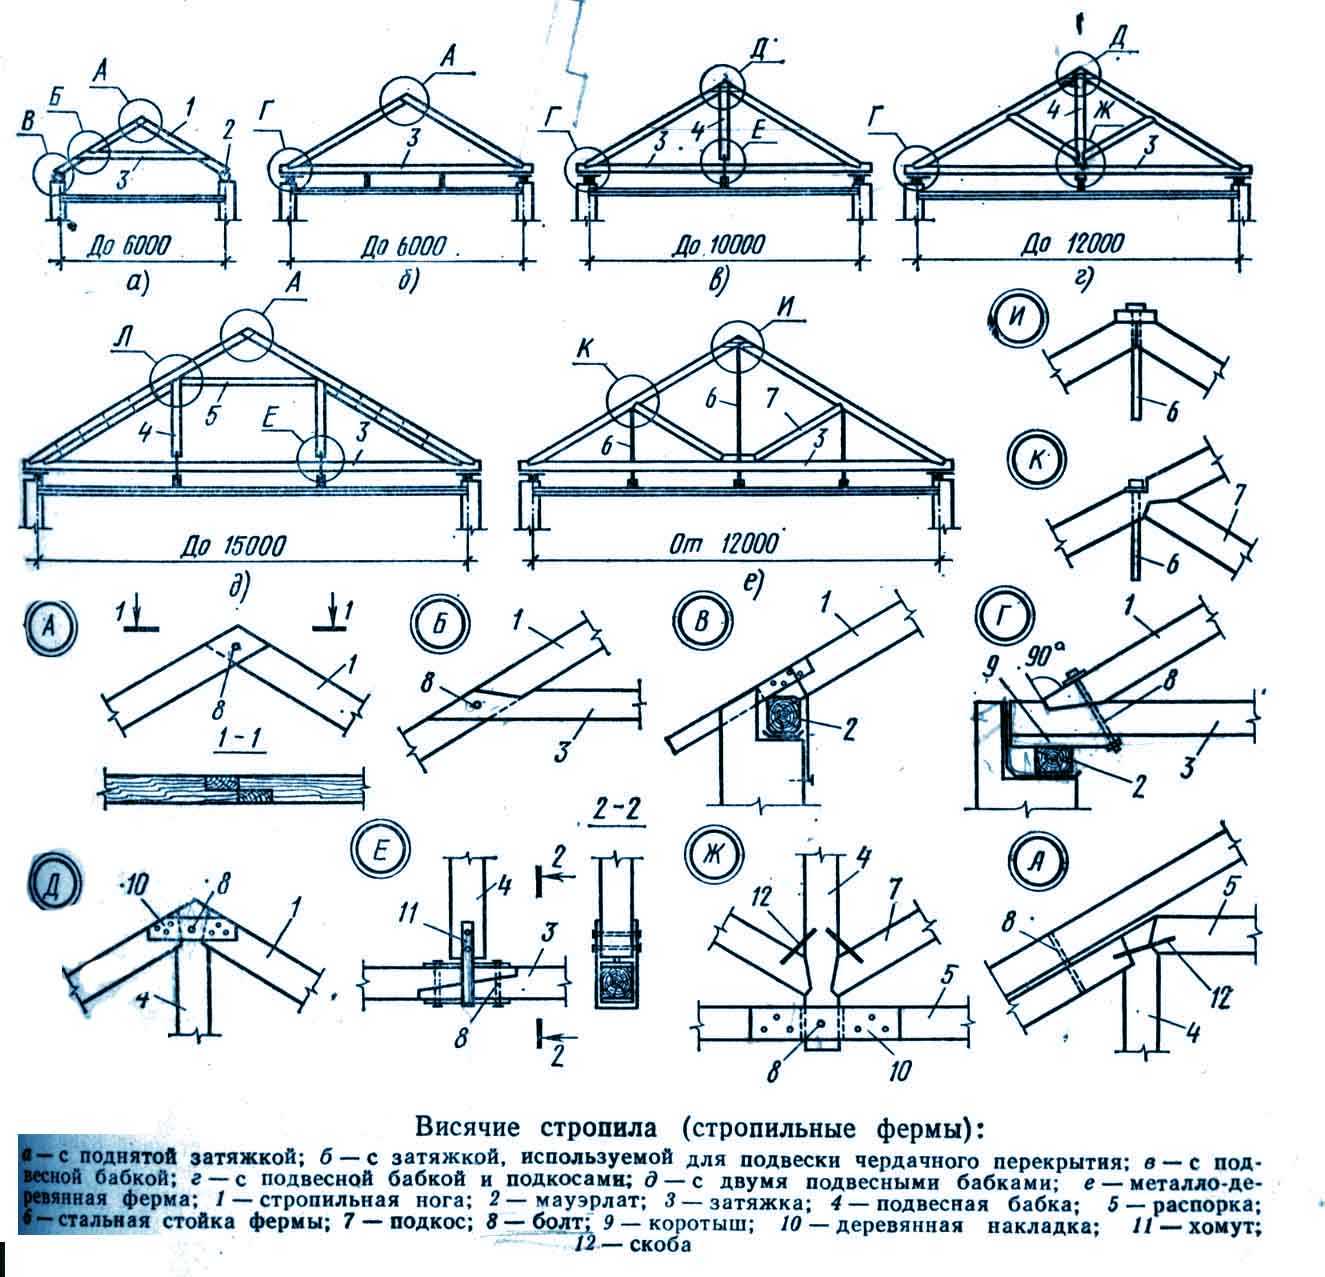 Элементы стропильной системы: устройство конструкции скатной крыши с деревянными стропилами, что входит в кровлю, названия кровельных элементов